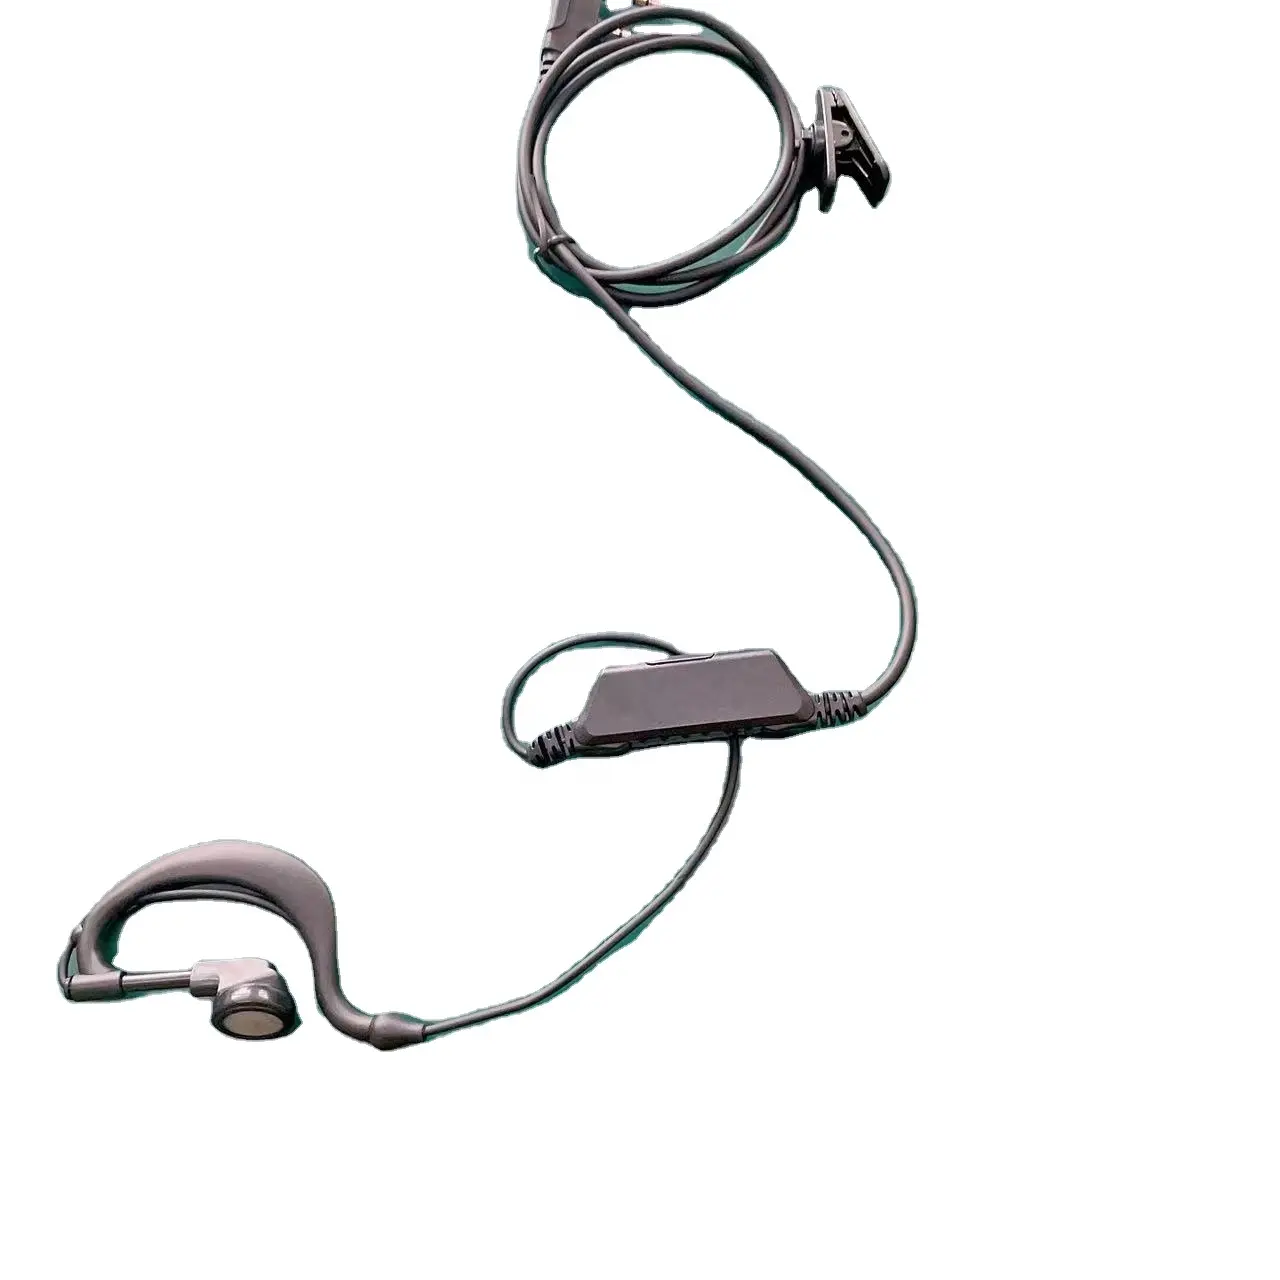 RISENKE EH19 earwig earpiece secret agents microphone earpiece headsets earphone for two way radio walkie talkie